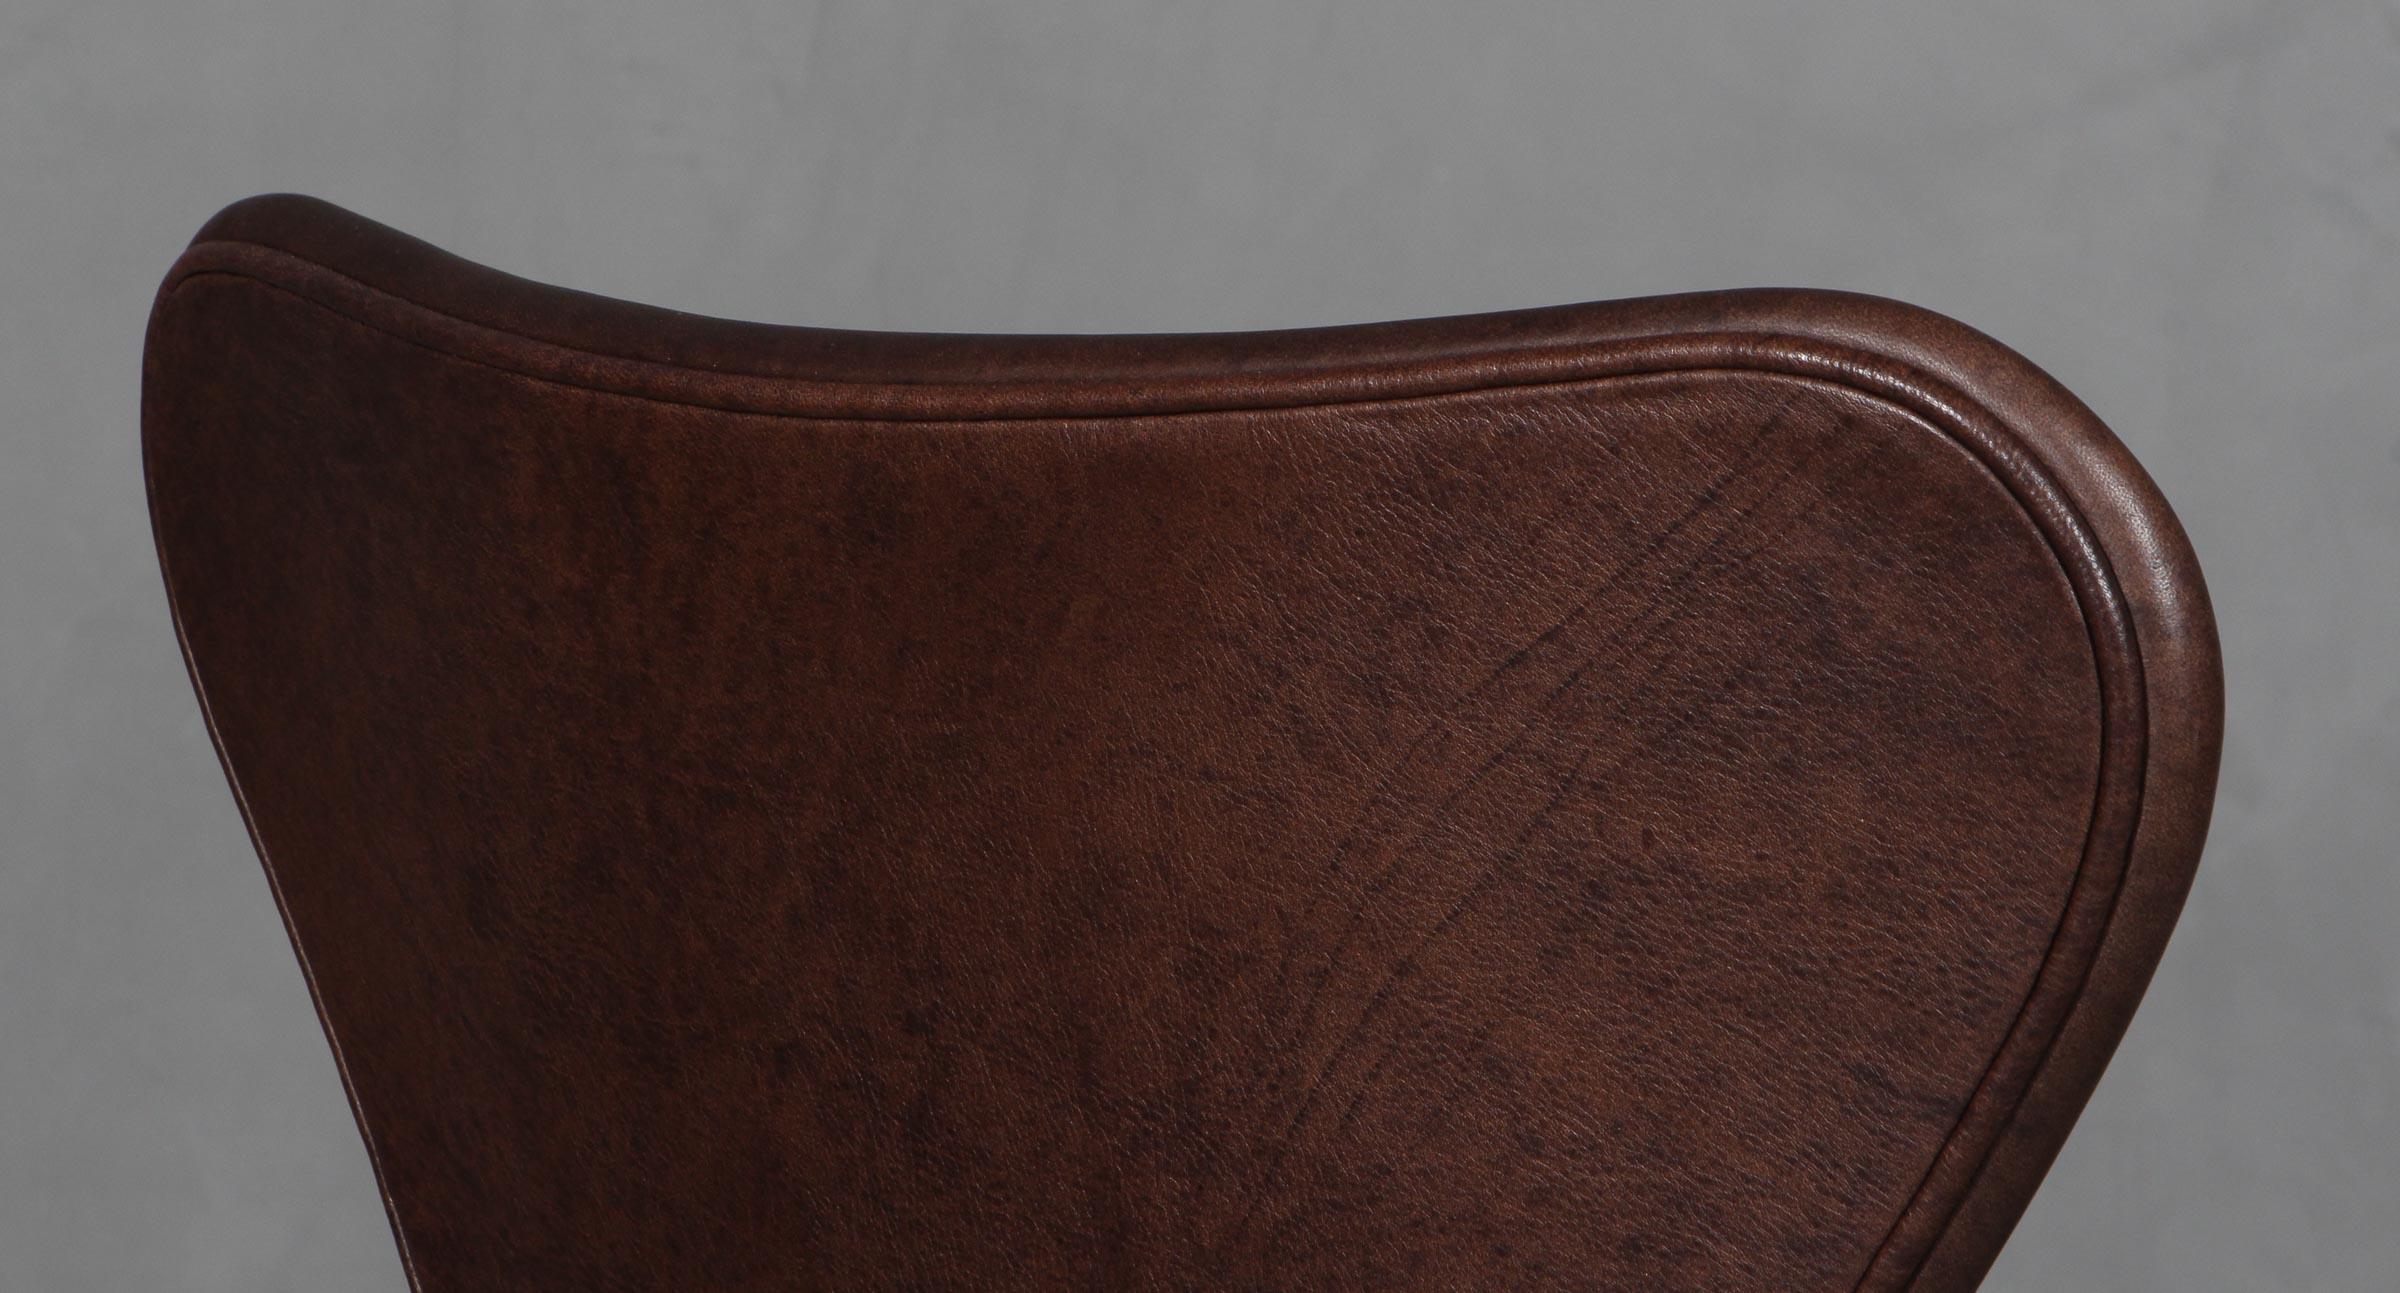 Cuir Chaise de salle à manger Arne Jacobsen, modèle « Syveren » 3107, cuir Mokka Aniline en vente